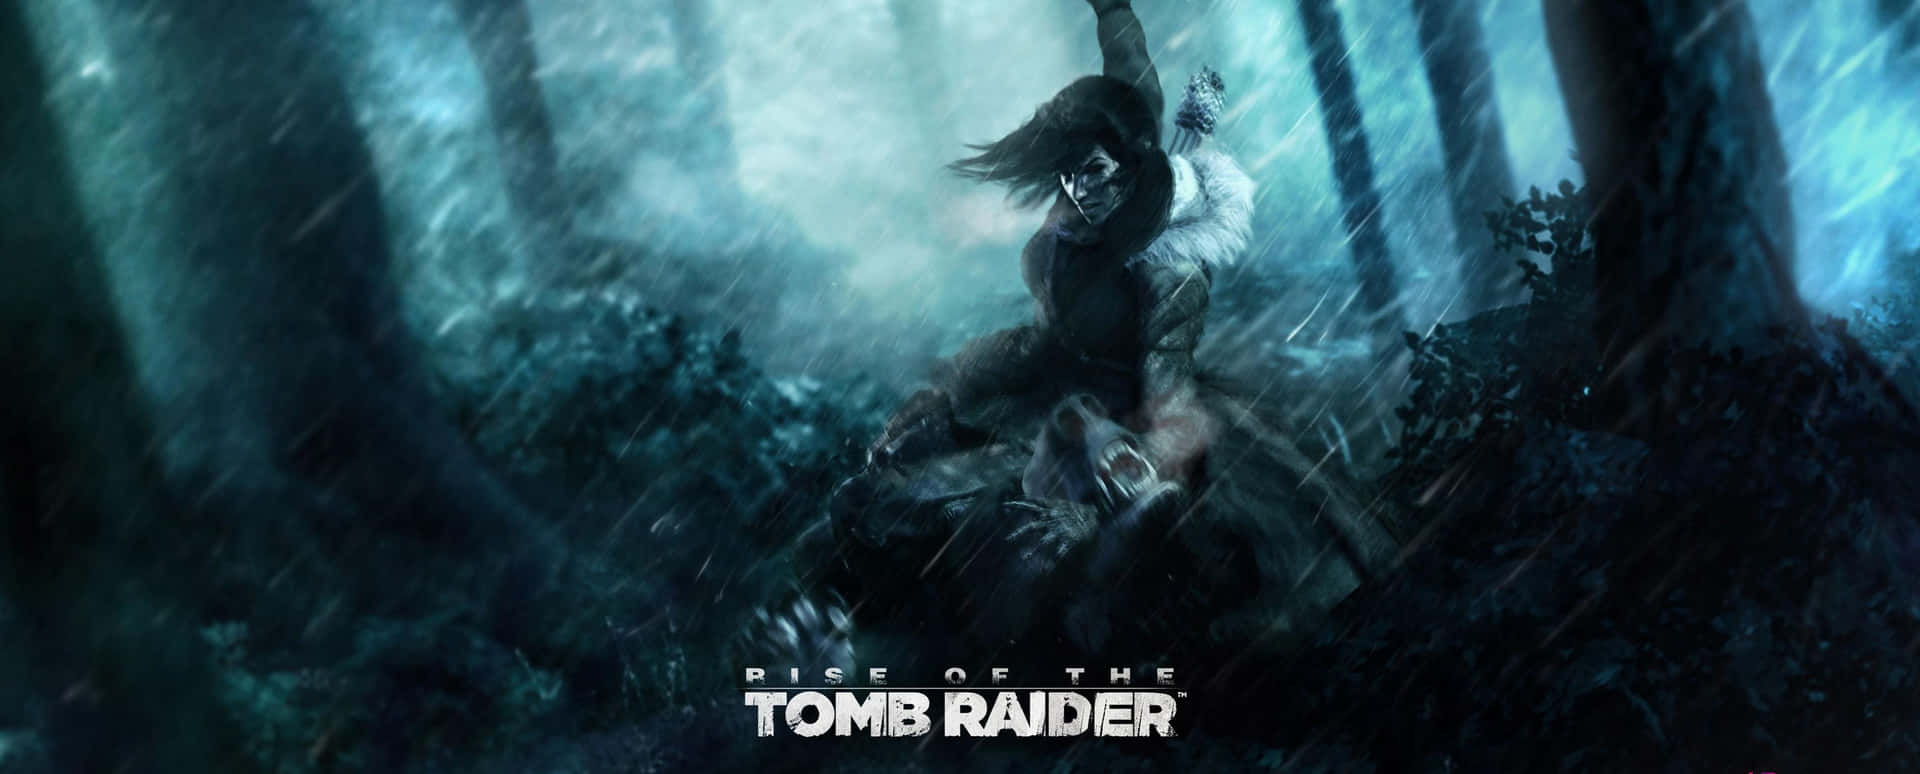 Boschisiberiani 3440x1440p Sfondo Rise Of The Tomb Raider